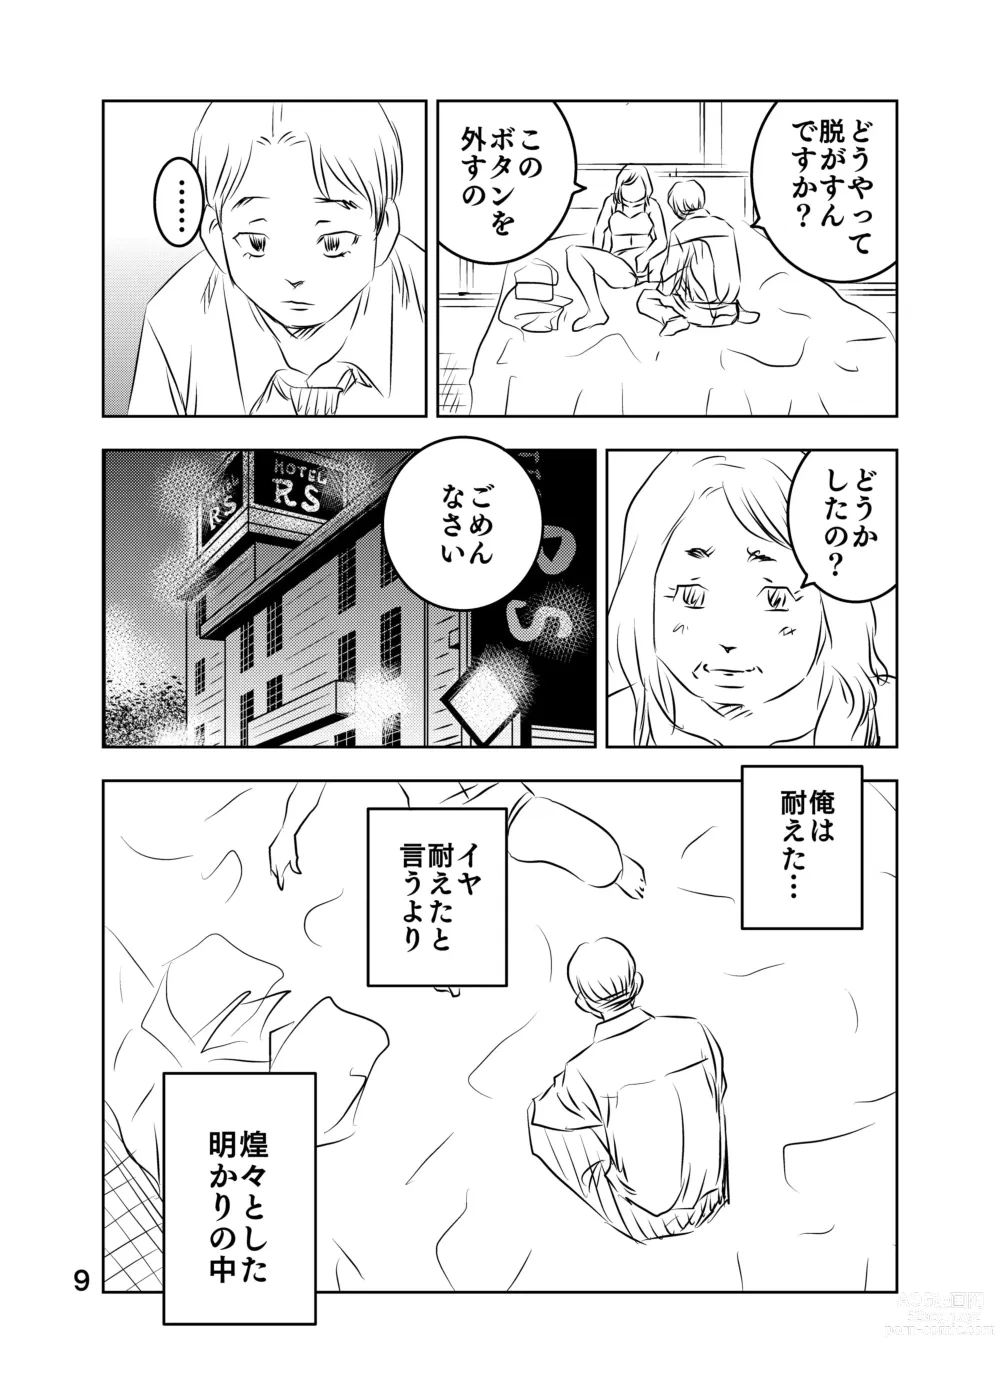 Page 23 of doujinshi Zurui Hito-tachi